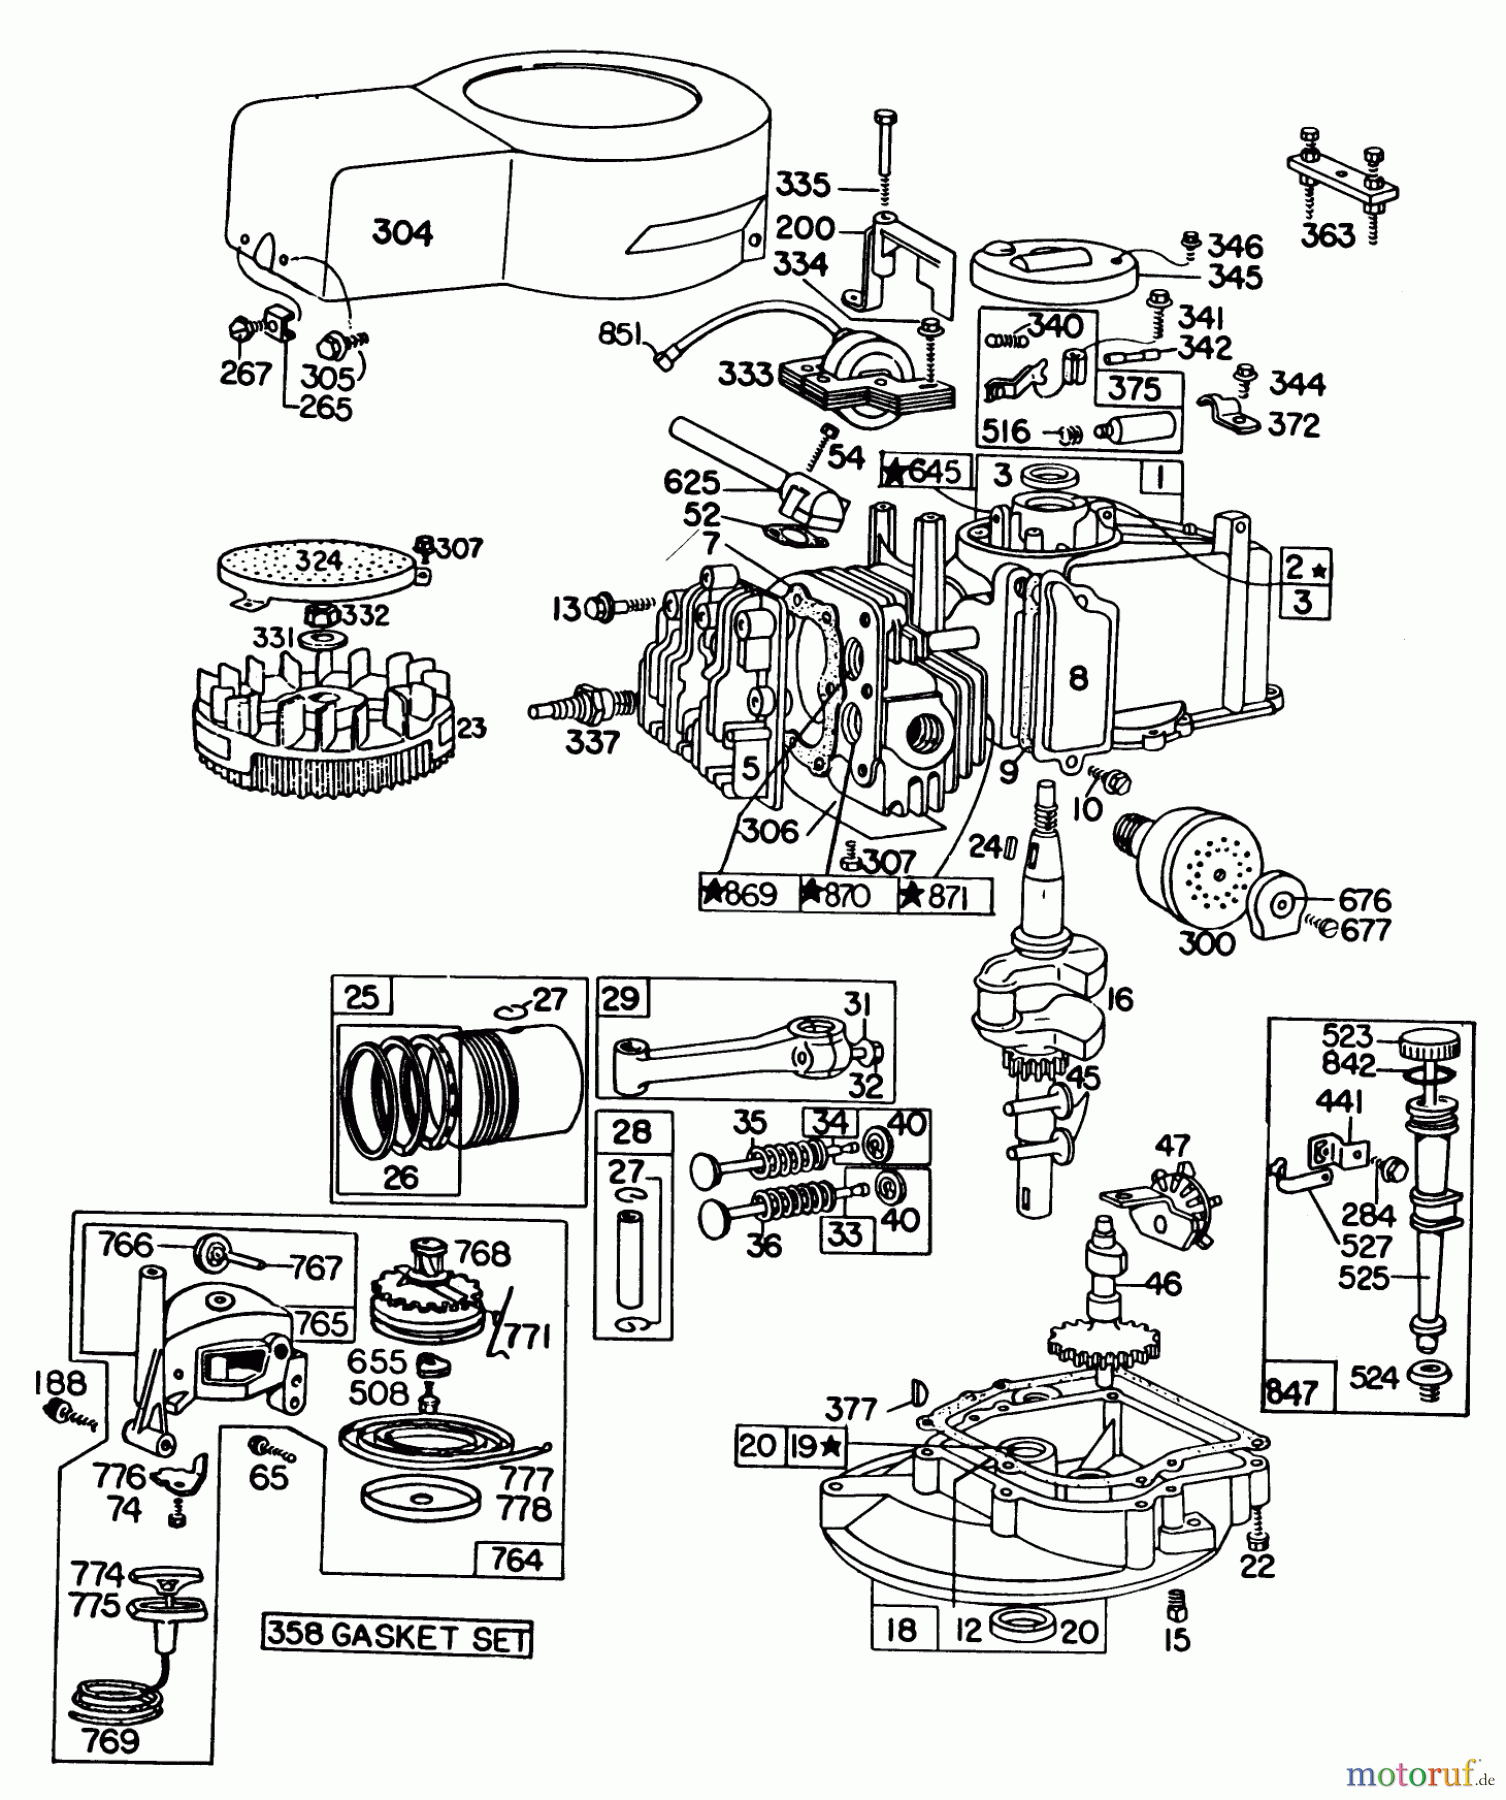  Toro Neu Mowers, Walk-Behind Seite 1 16360 - Toro Whirlwind, 1979 (9000001-9999999) ENGINE BRIGGS & STRATTON MODEL 92908-1931-04 FOR 21